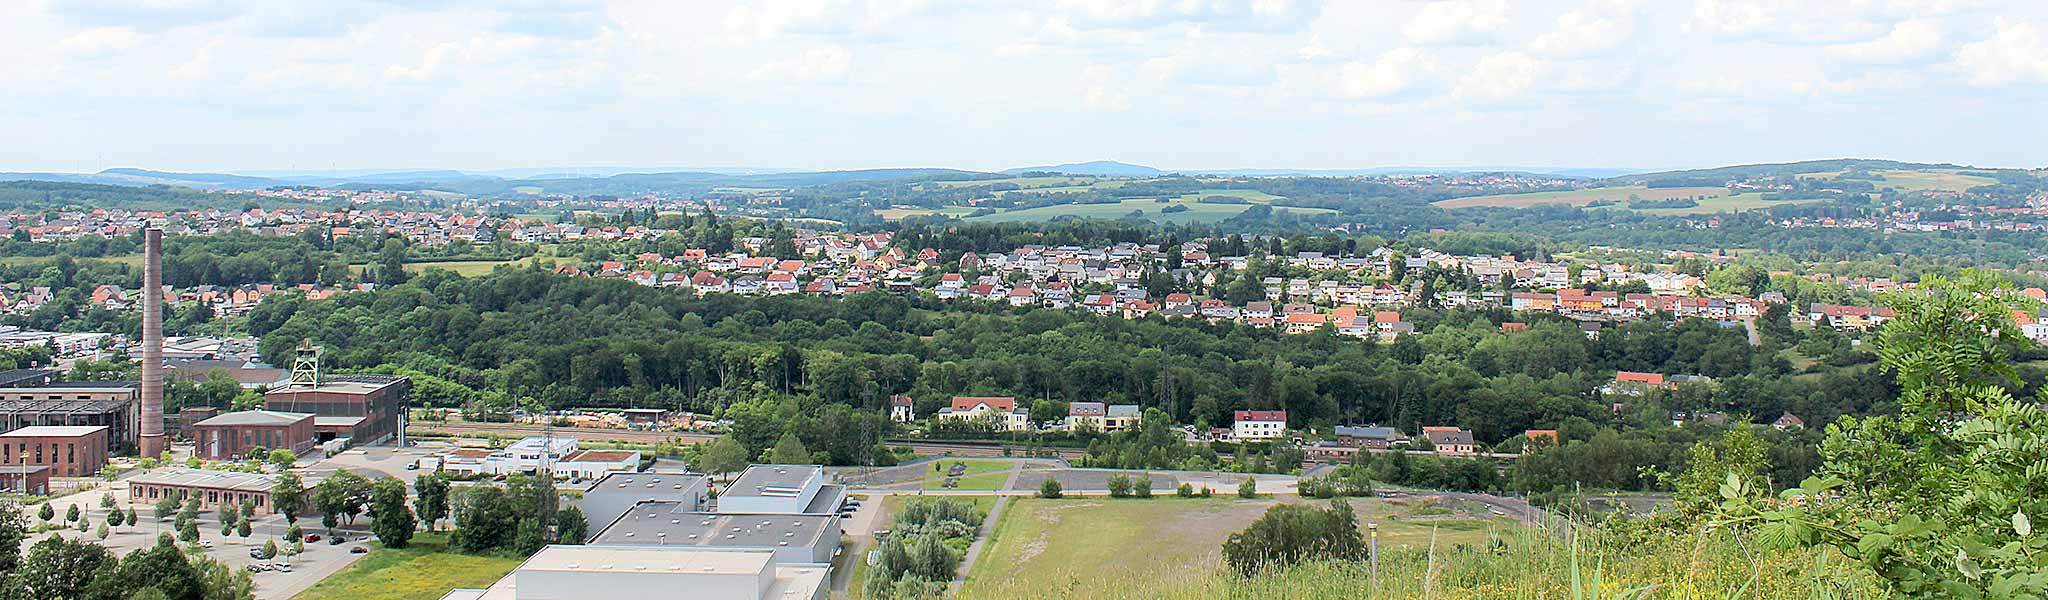 landsweiler.jpg